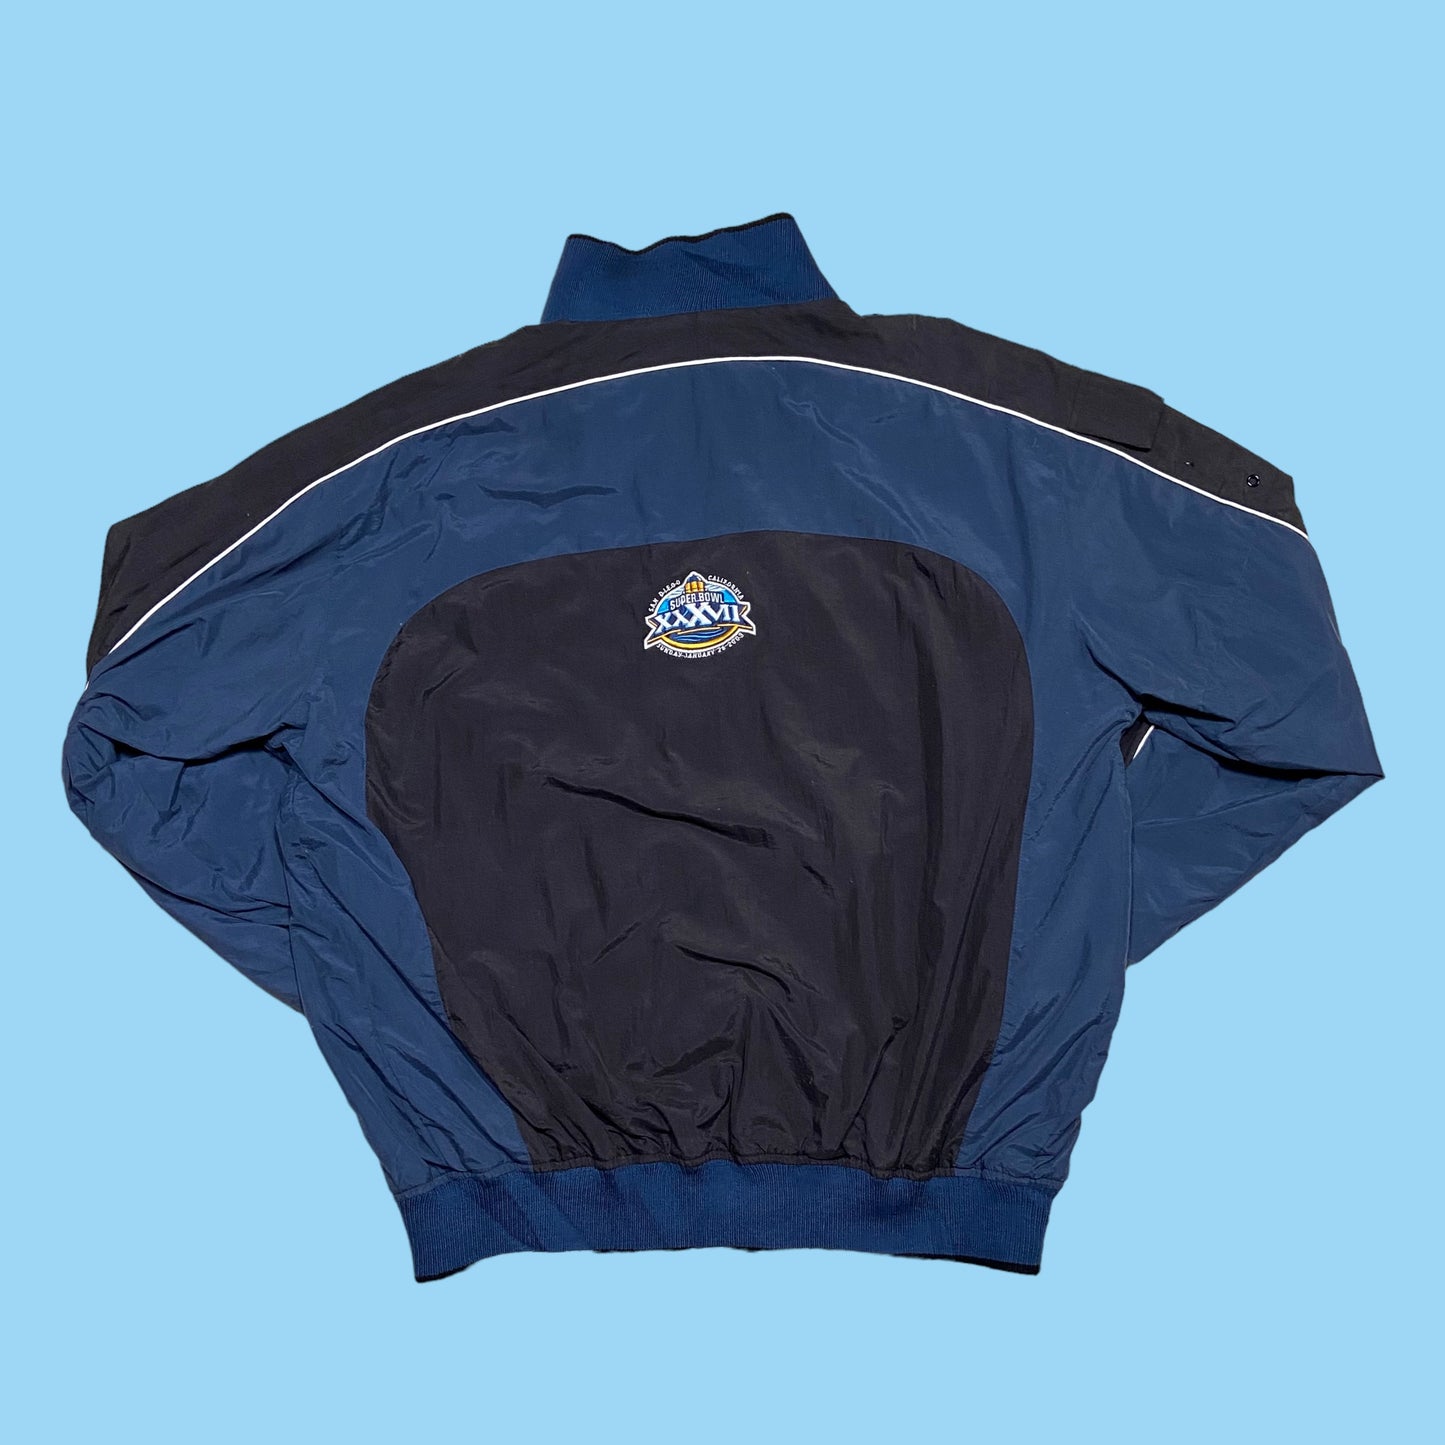 Super Bowl XXVII jacket - XL